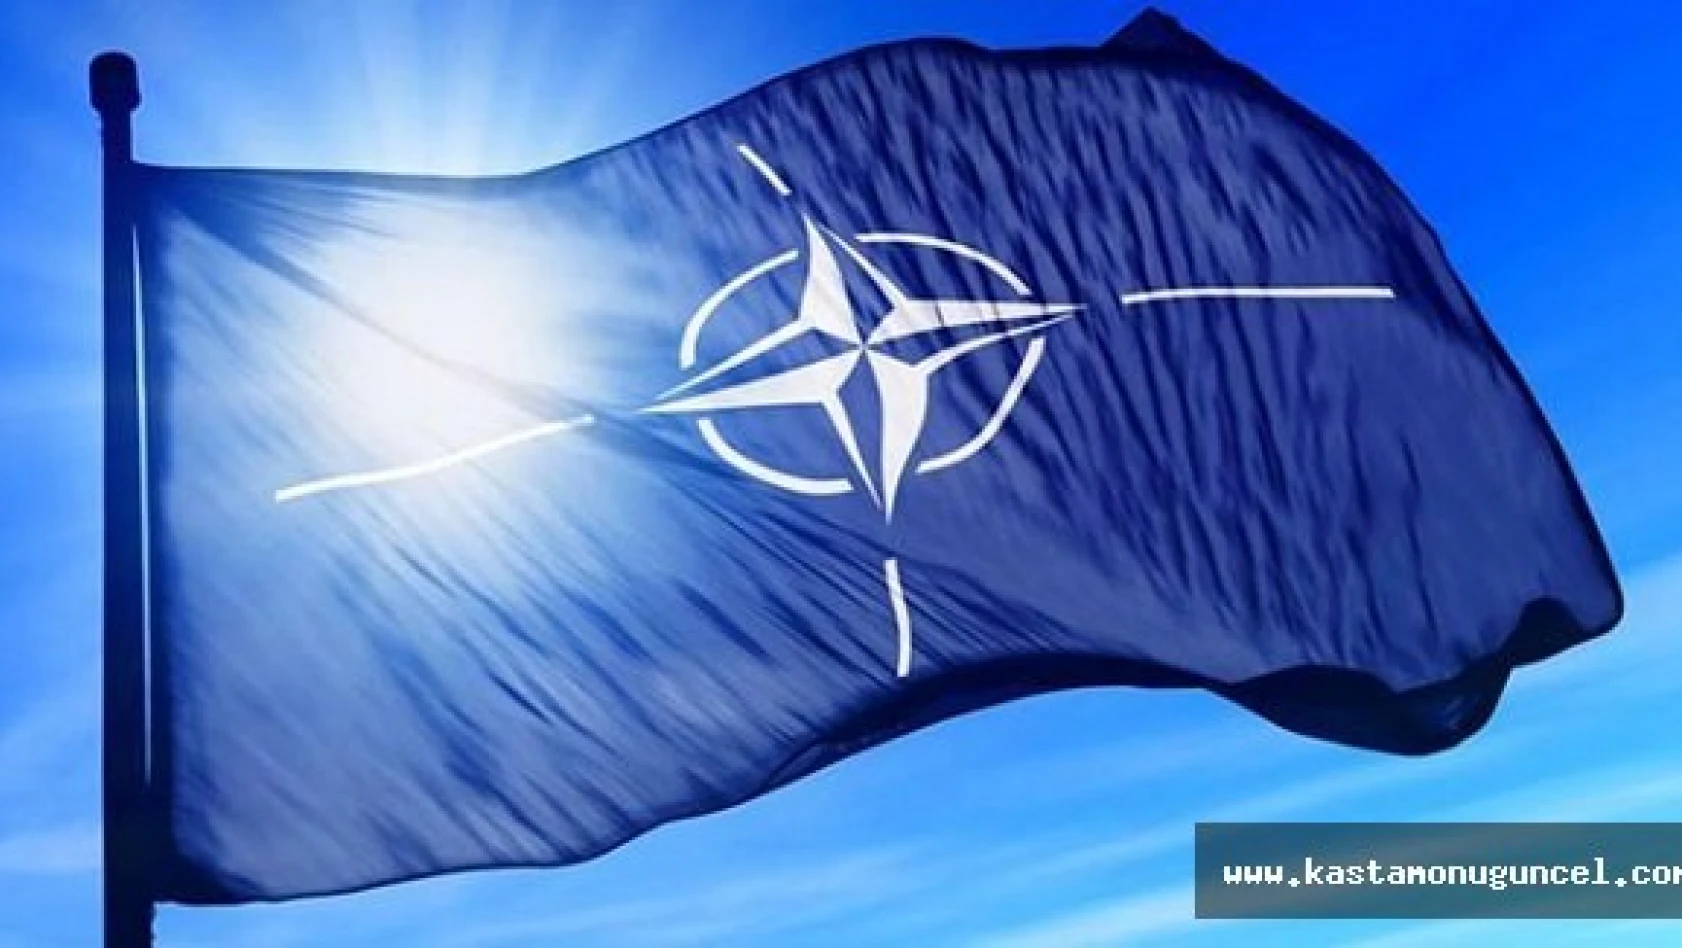 NATO'dan Türkiye'nin Hava Güvenliğine Destek